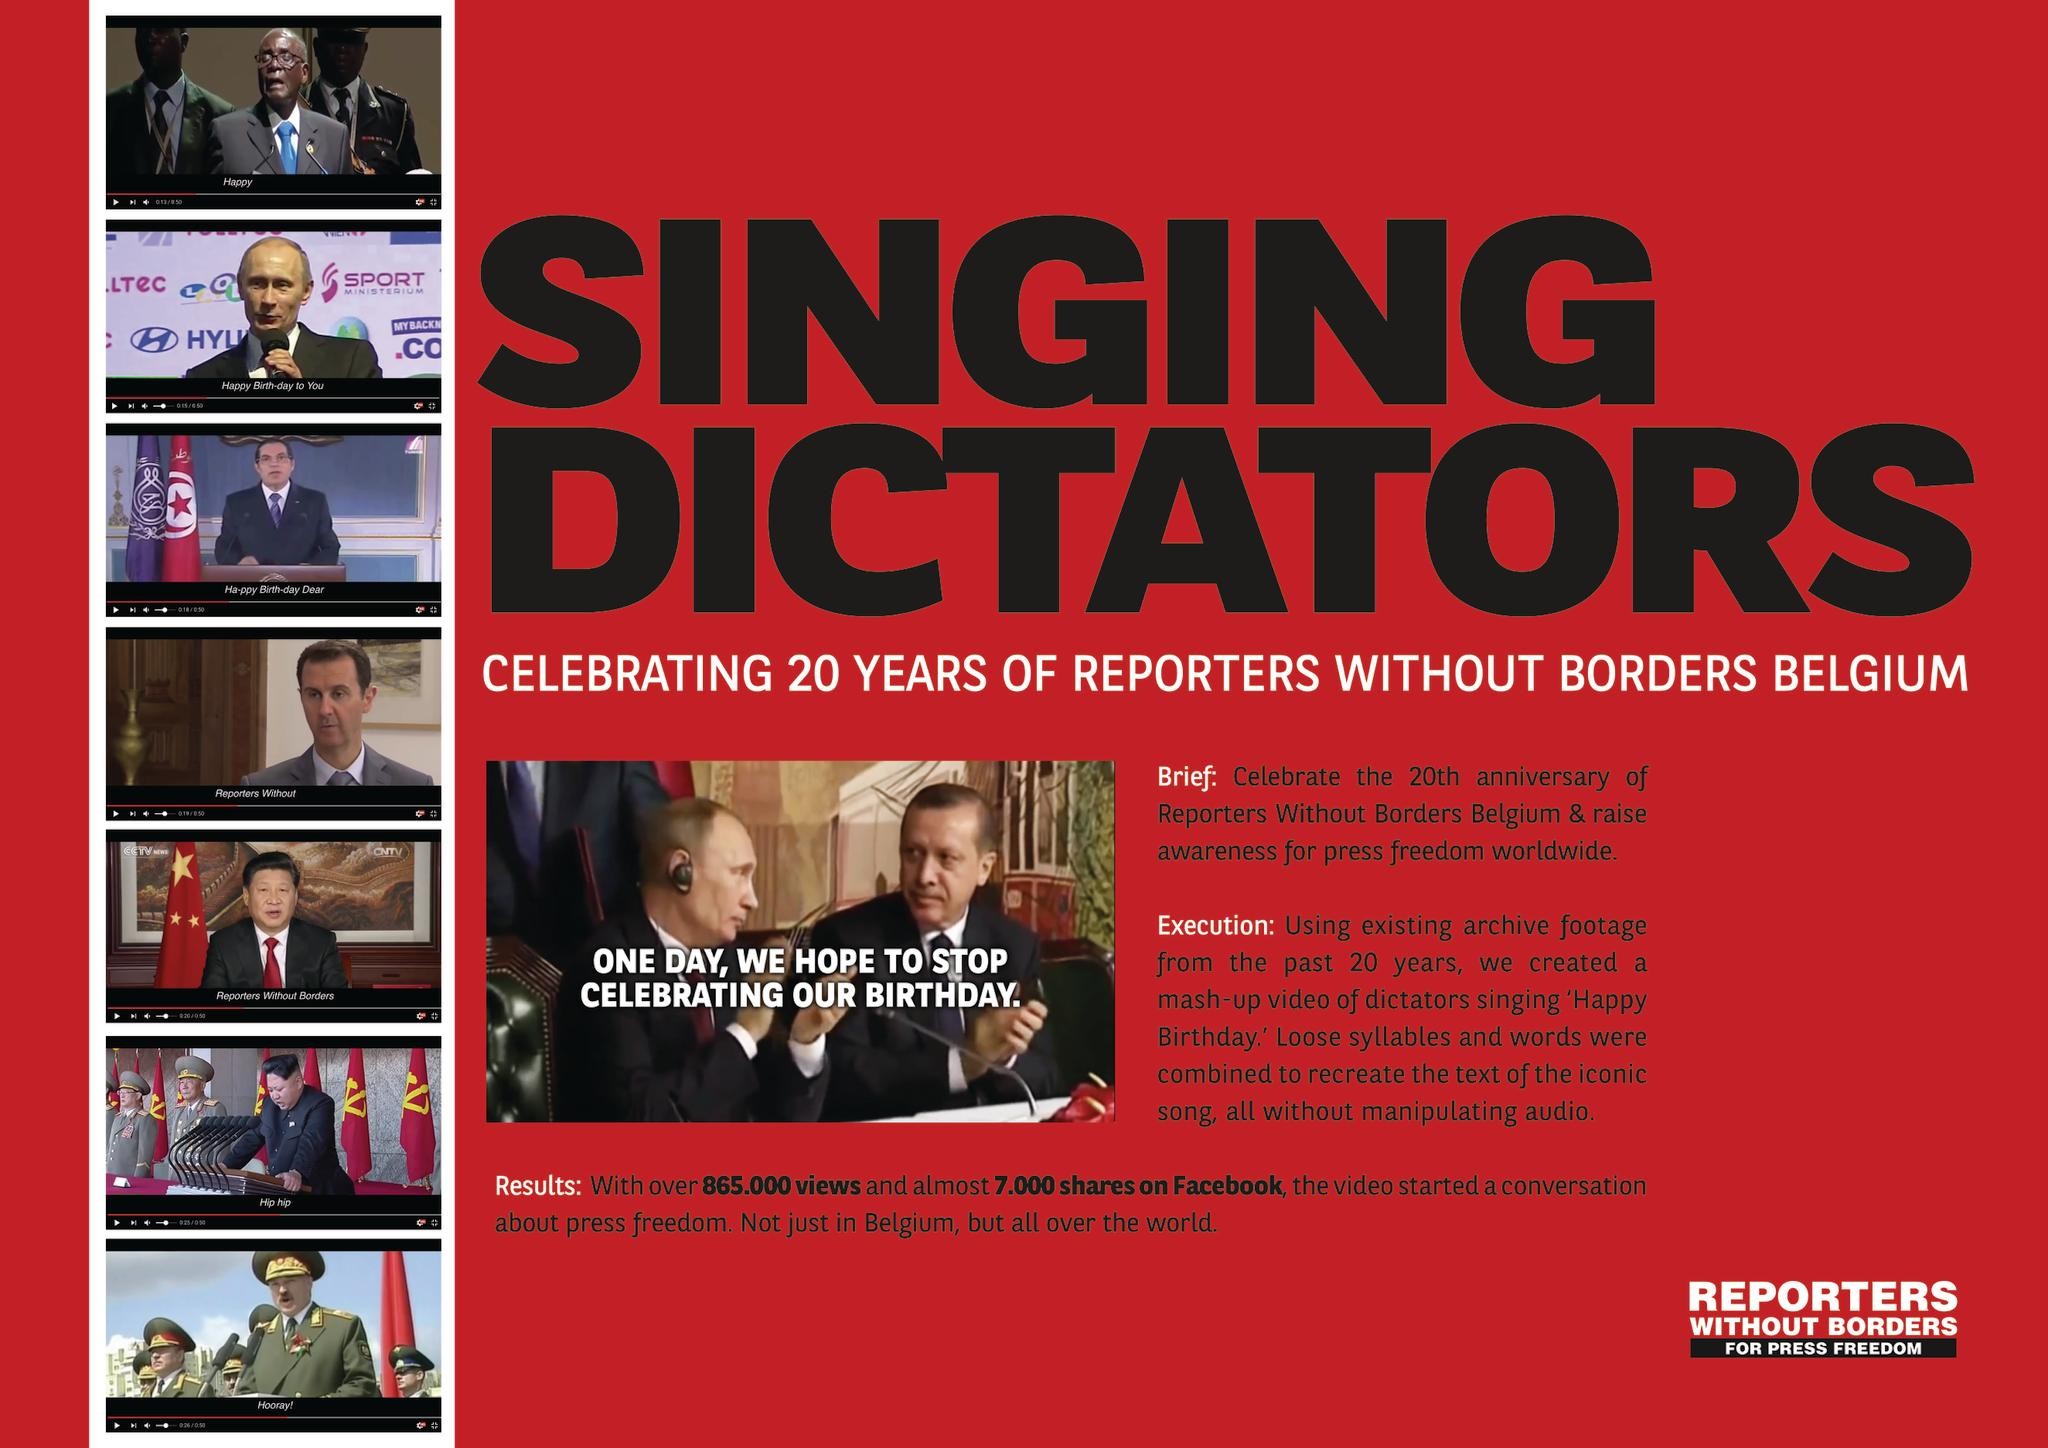 Singing Dictators